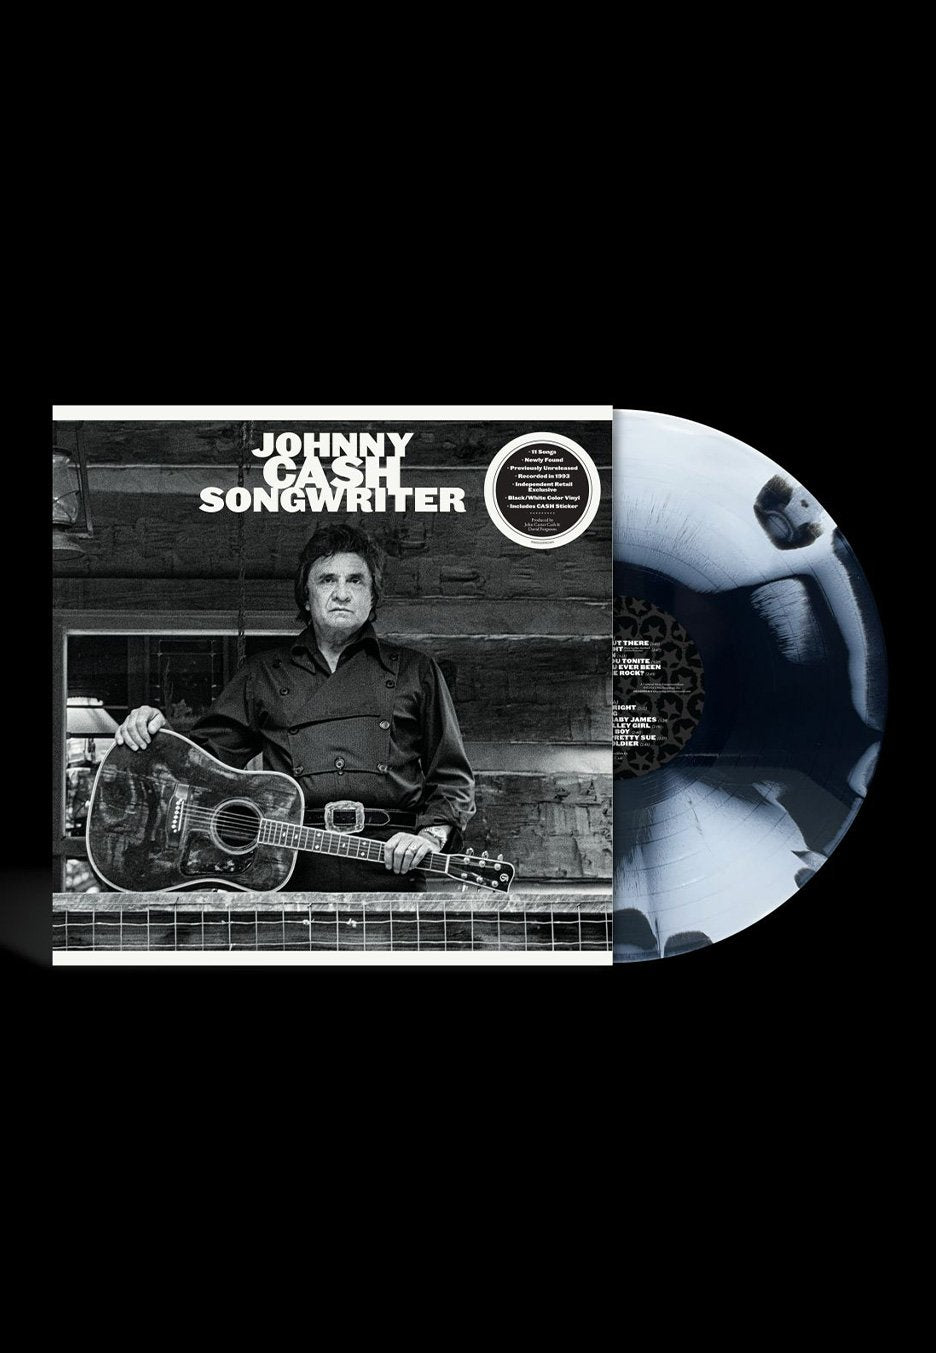 Johnny Cash - Songwriter Ltd. Black/White - Colored Vinyl